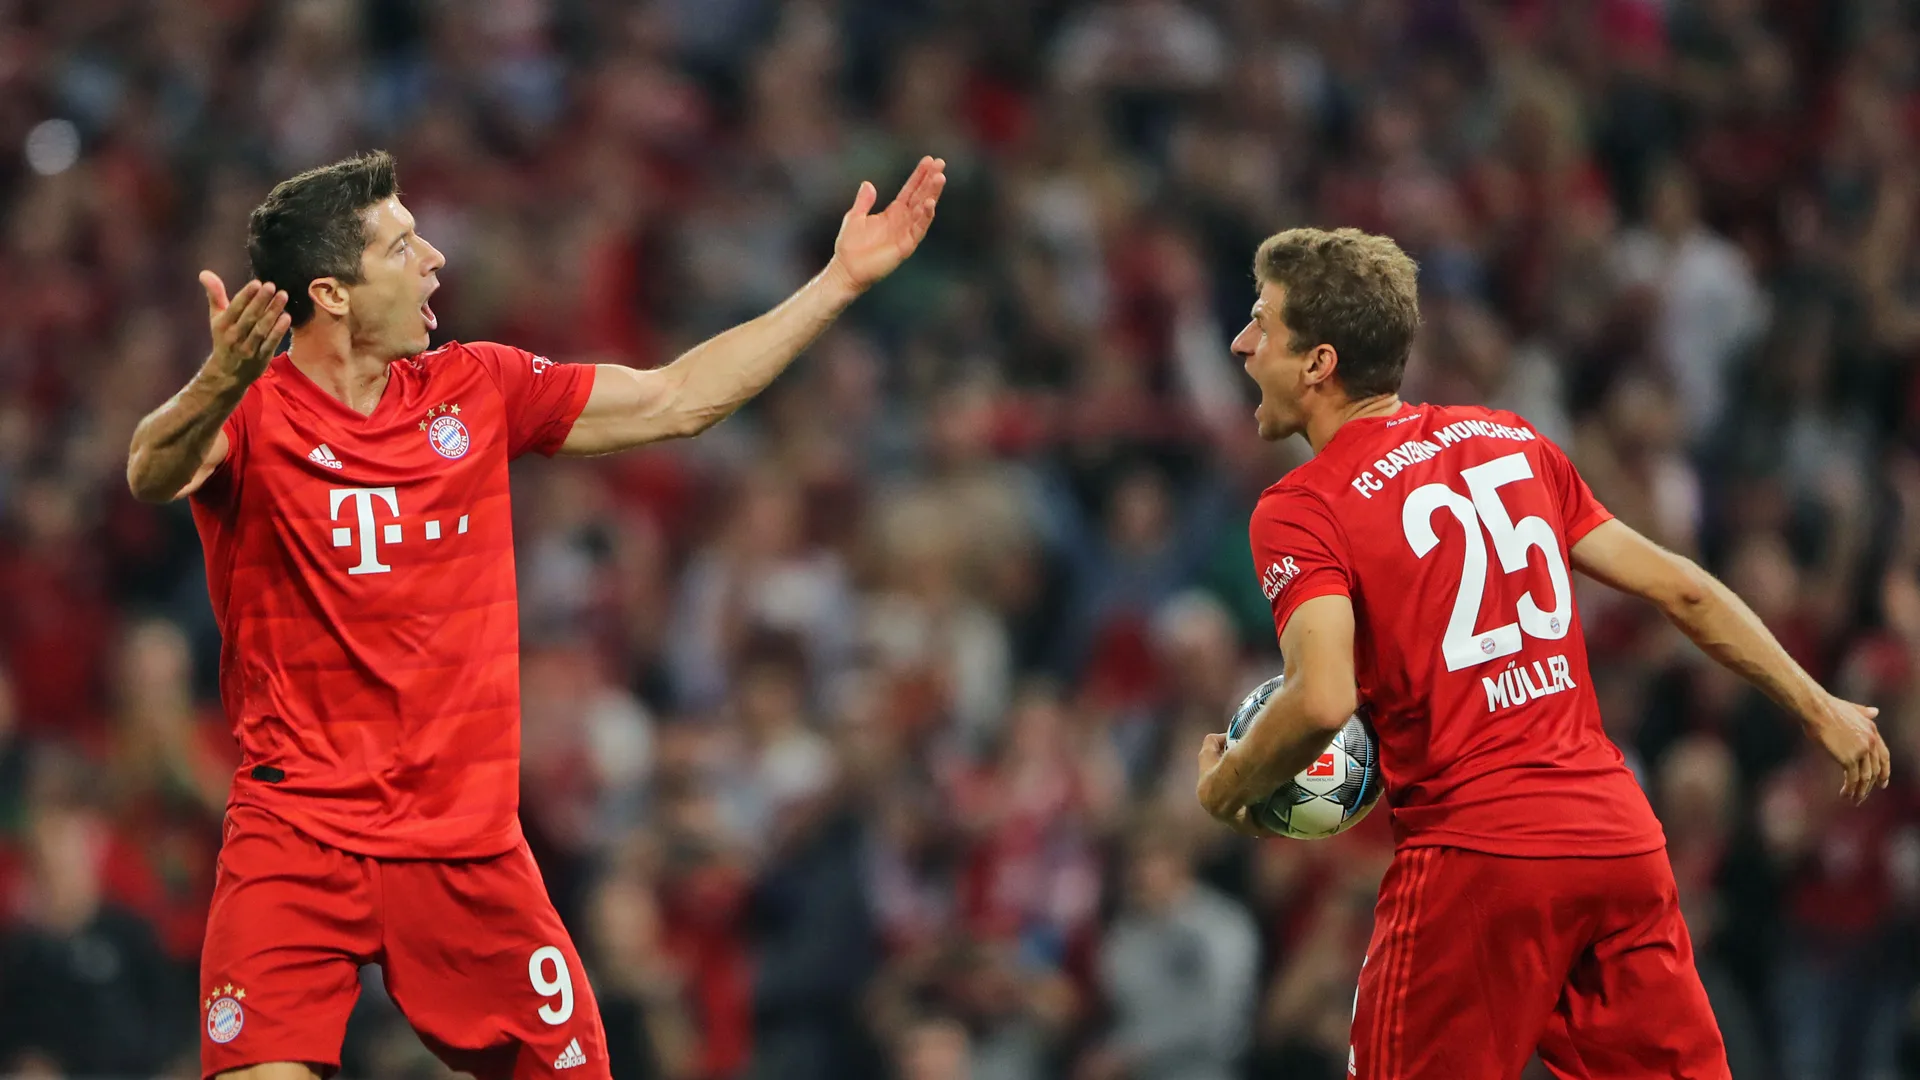 Edhe pse u eliminua, Bayerni fitoi 100 milionë euro nga Champions League